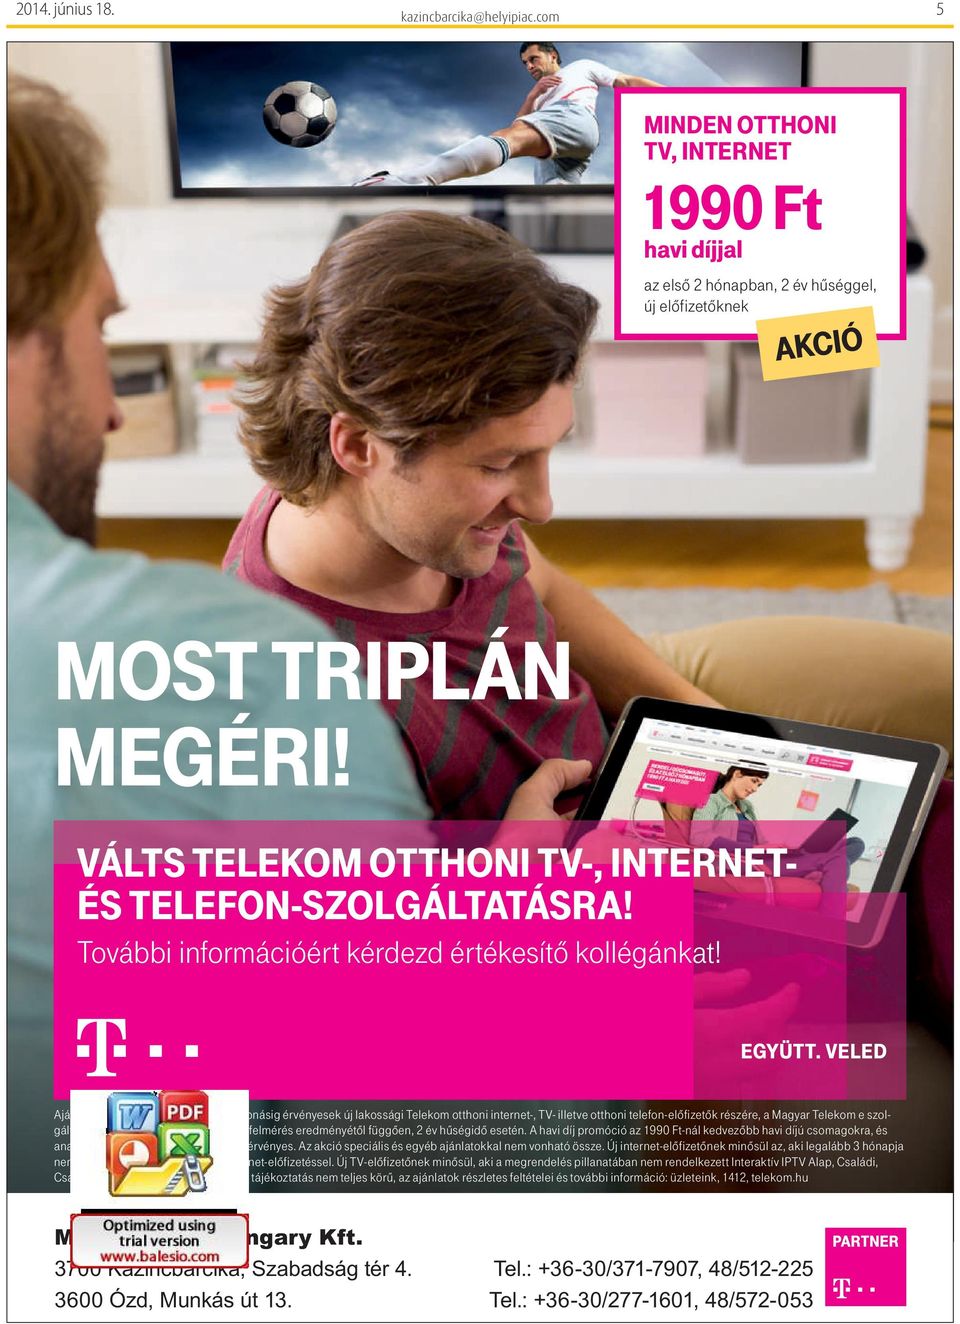 április 26-tól visszavonásig érvényesek új lakossági Telekom otthoni internet-, TV- illetve otthoni telefon-előfizetők részére, a Magyar Telekom e szolgáltatással lefedett területein műszaki felmérés